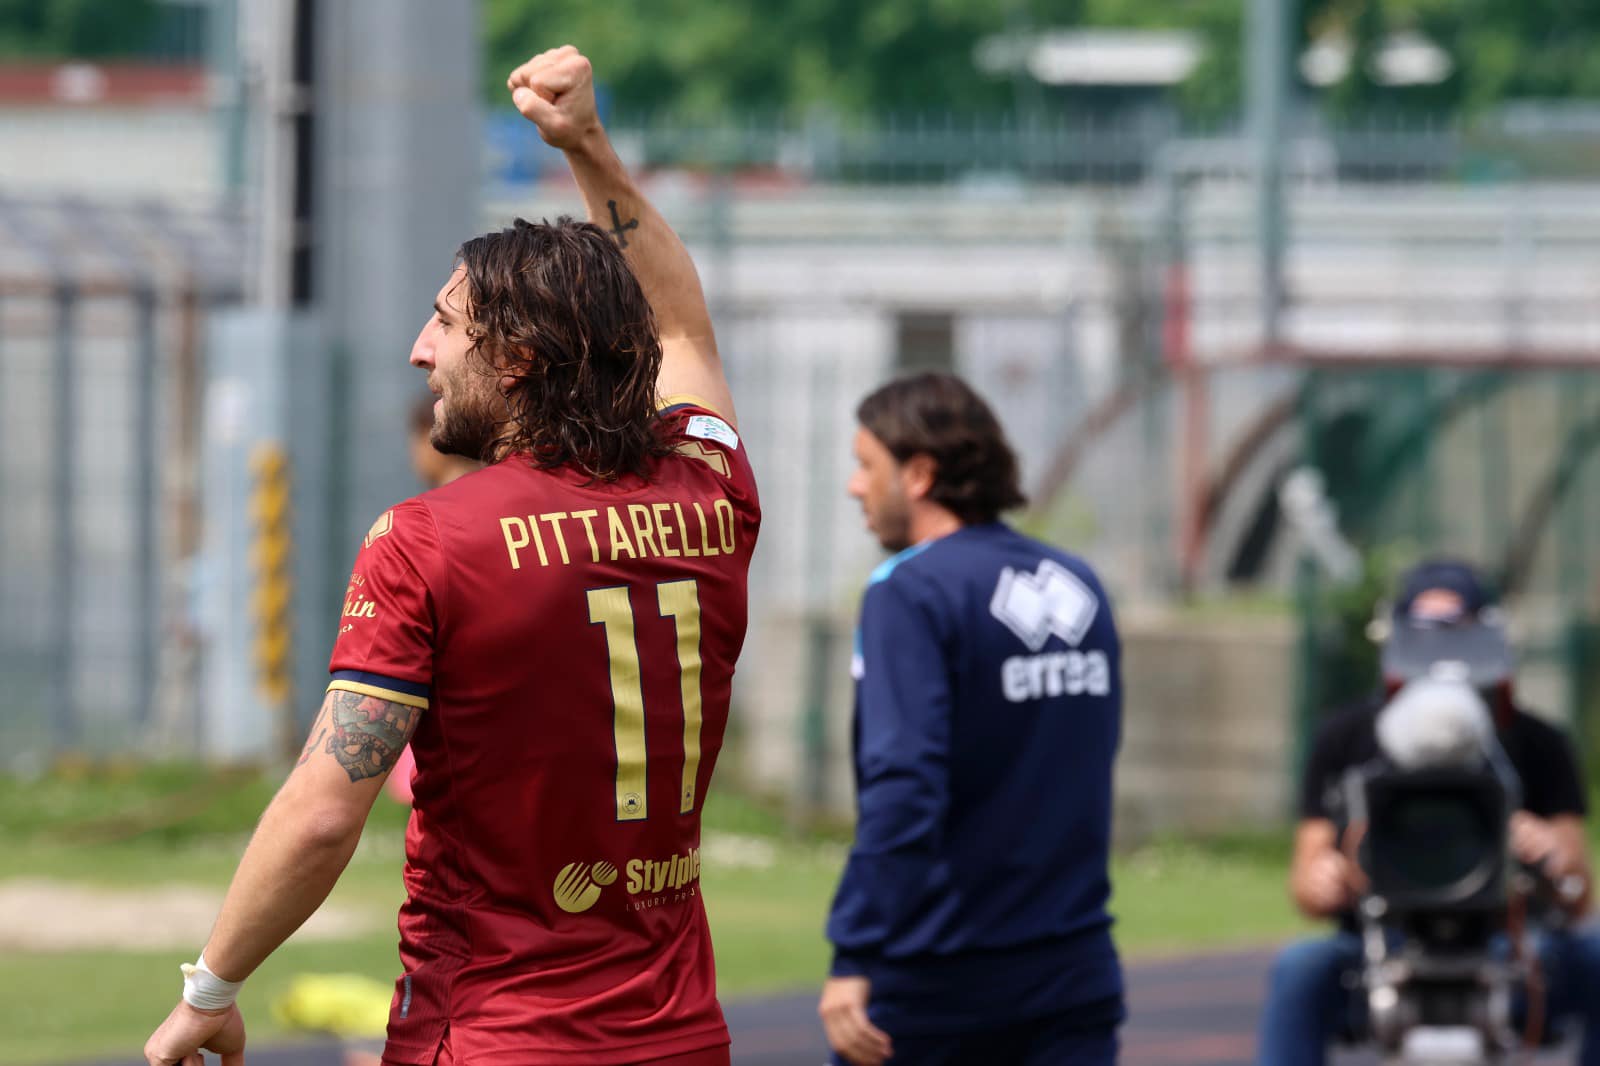 Pittarello believes Cittadella will eventually reach Serie A